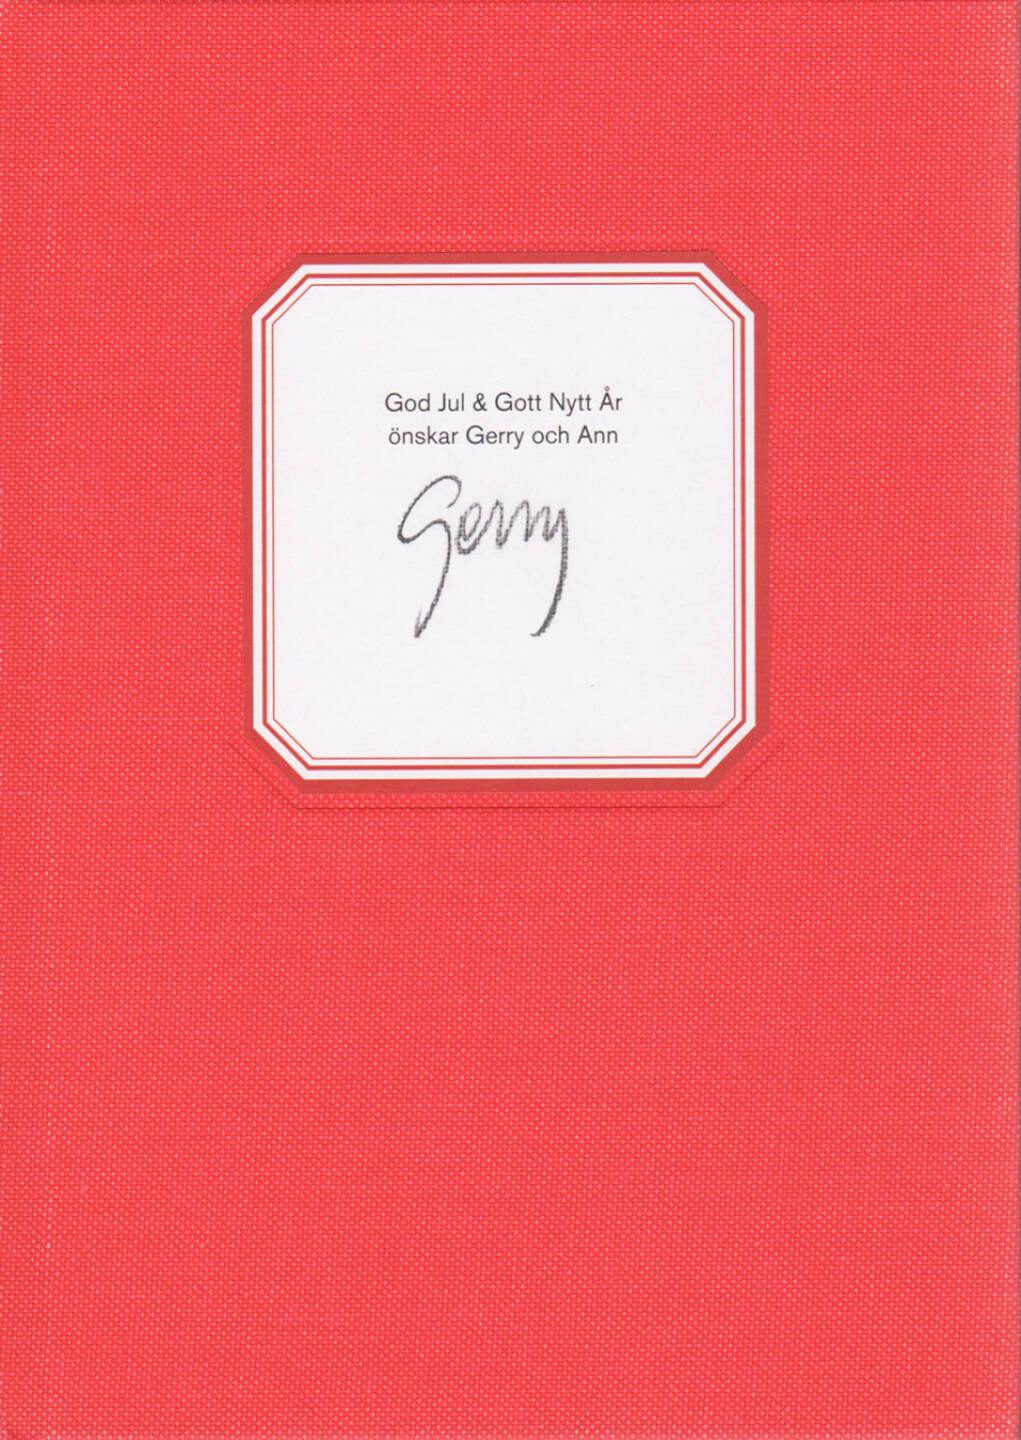 Gerry Johansson - God Jul & Gott Nytt Ar, GunGallery 2011, Cover - http://josefchladek.com/book/gerry_johansson_-_god_jul_gott_nytt_ar